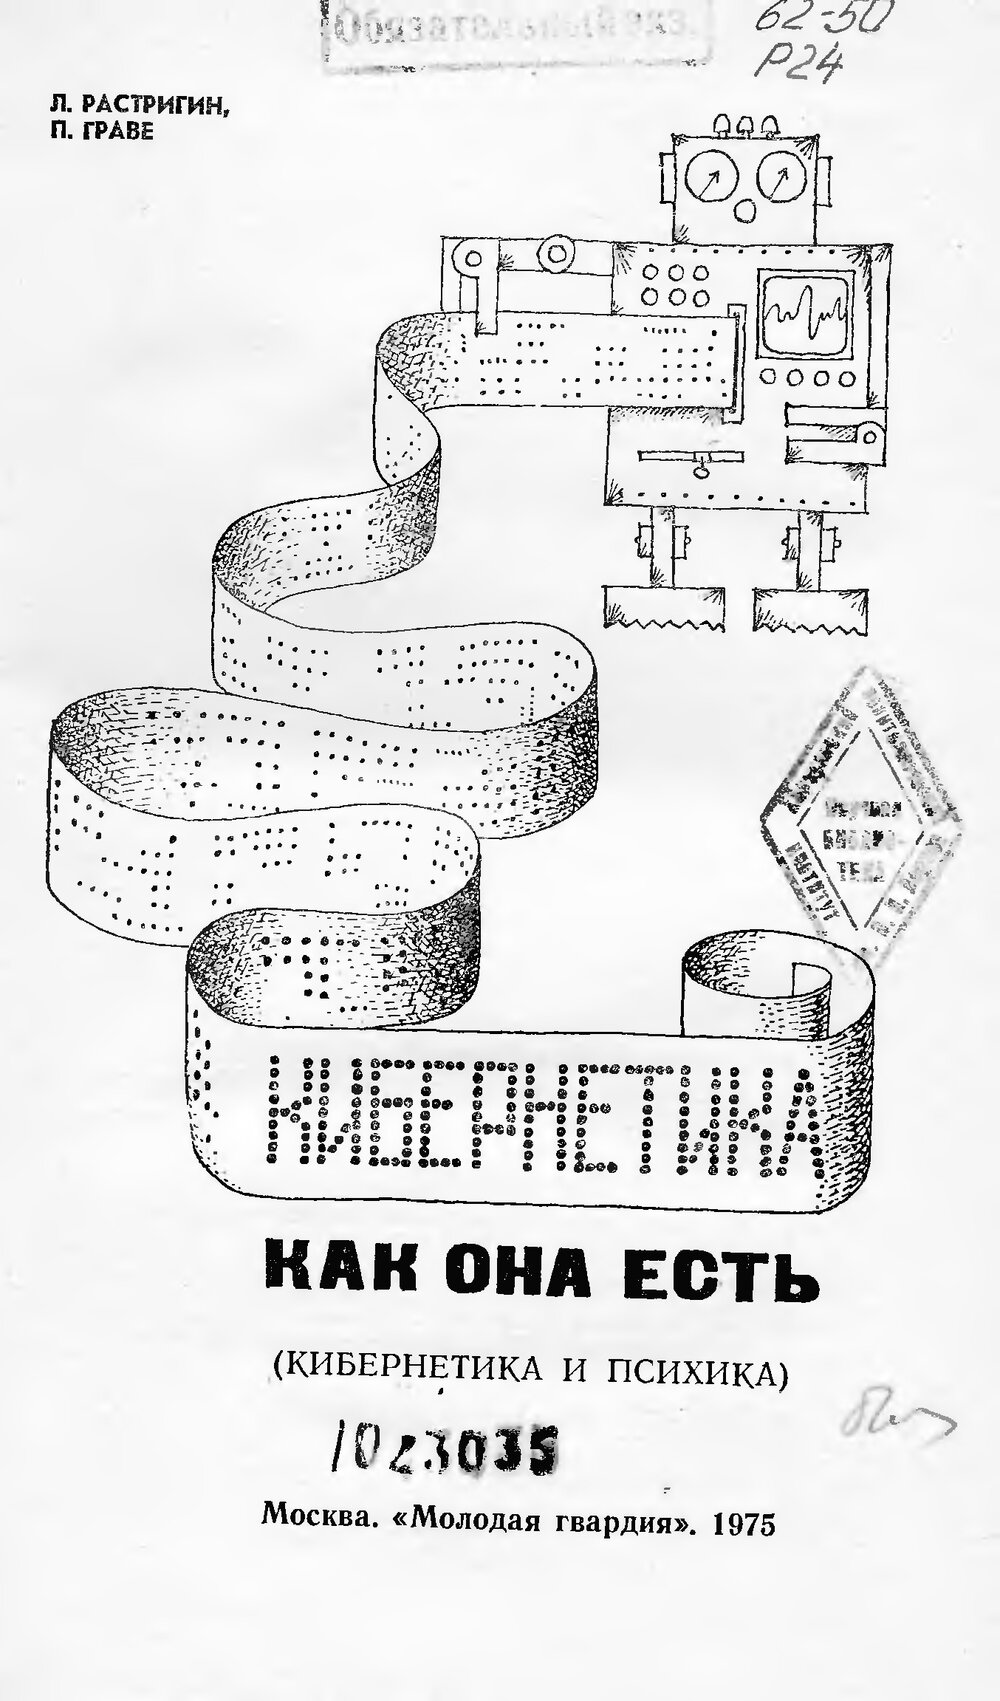 Обложка книги "Кибернетика как она есть (Эврика)"